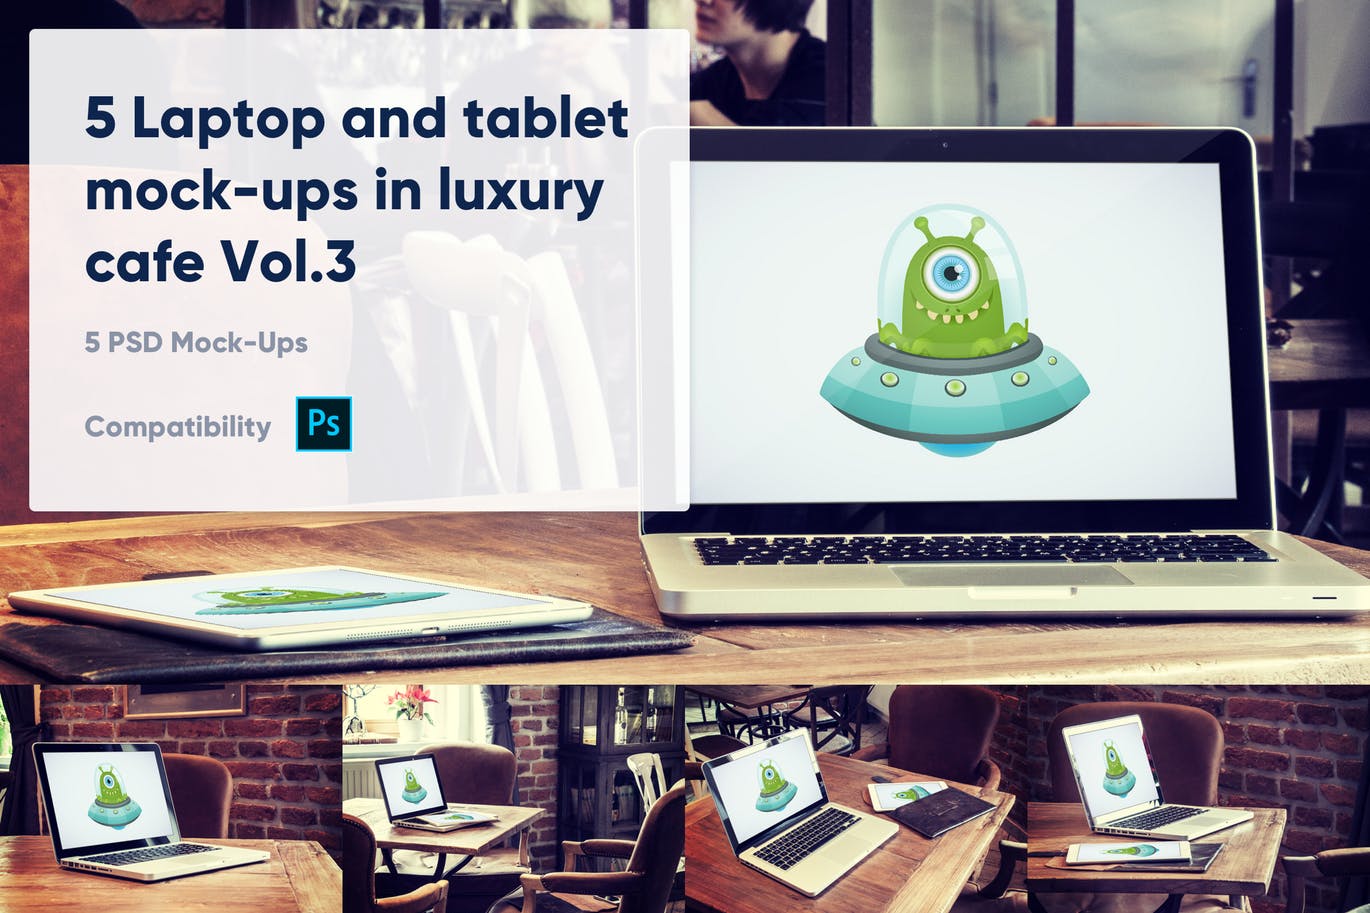 咖啡厅场景笔记本电脑&平板电脑屏幕预览素材库精选样机v3 5 Laptop and tablet mock-ups in cafe Vol. 3插图